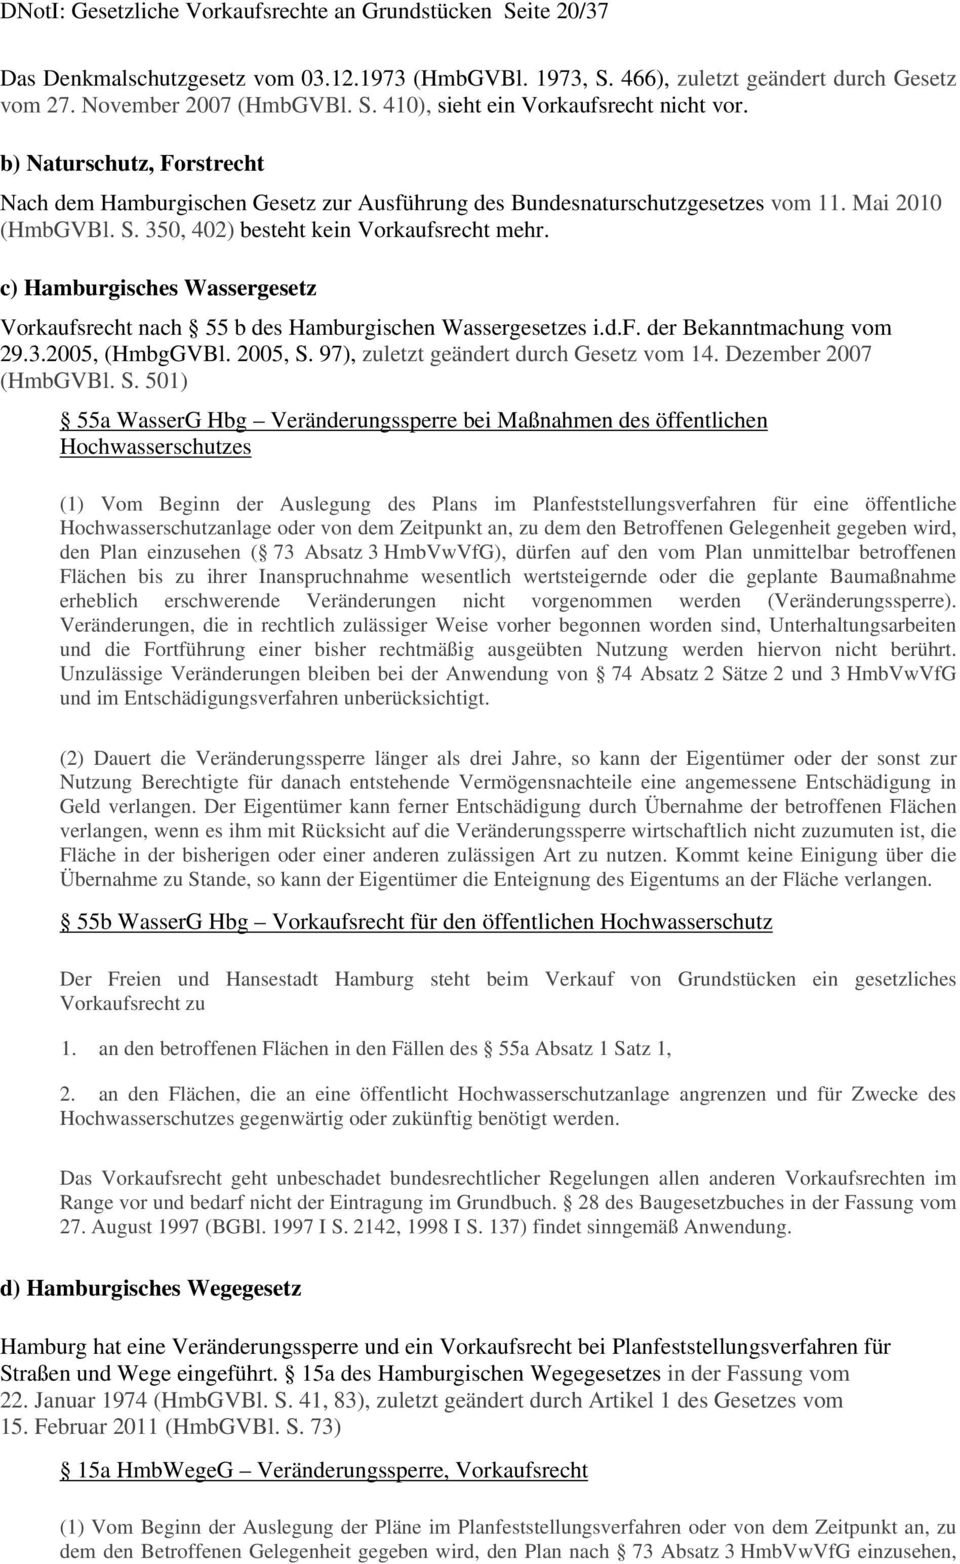 c) Hamburgisches Wassergesetz Vorkaufsrecht nach 55 b des Hamburgischen Wassergesetzes i.d.f. der Bekanntmachung vom 29.3.2005, (HmbgGVBl. 2005, S. 97), zuletzt geändert durch Gesetz vom 14.